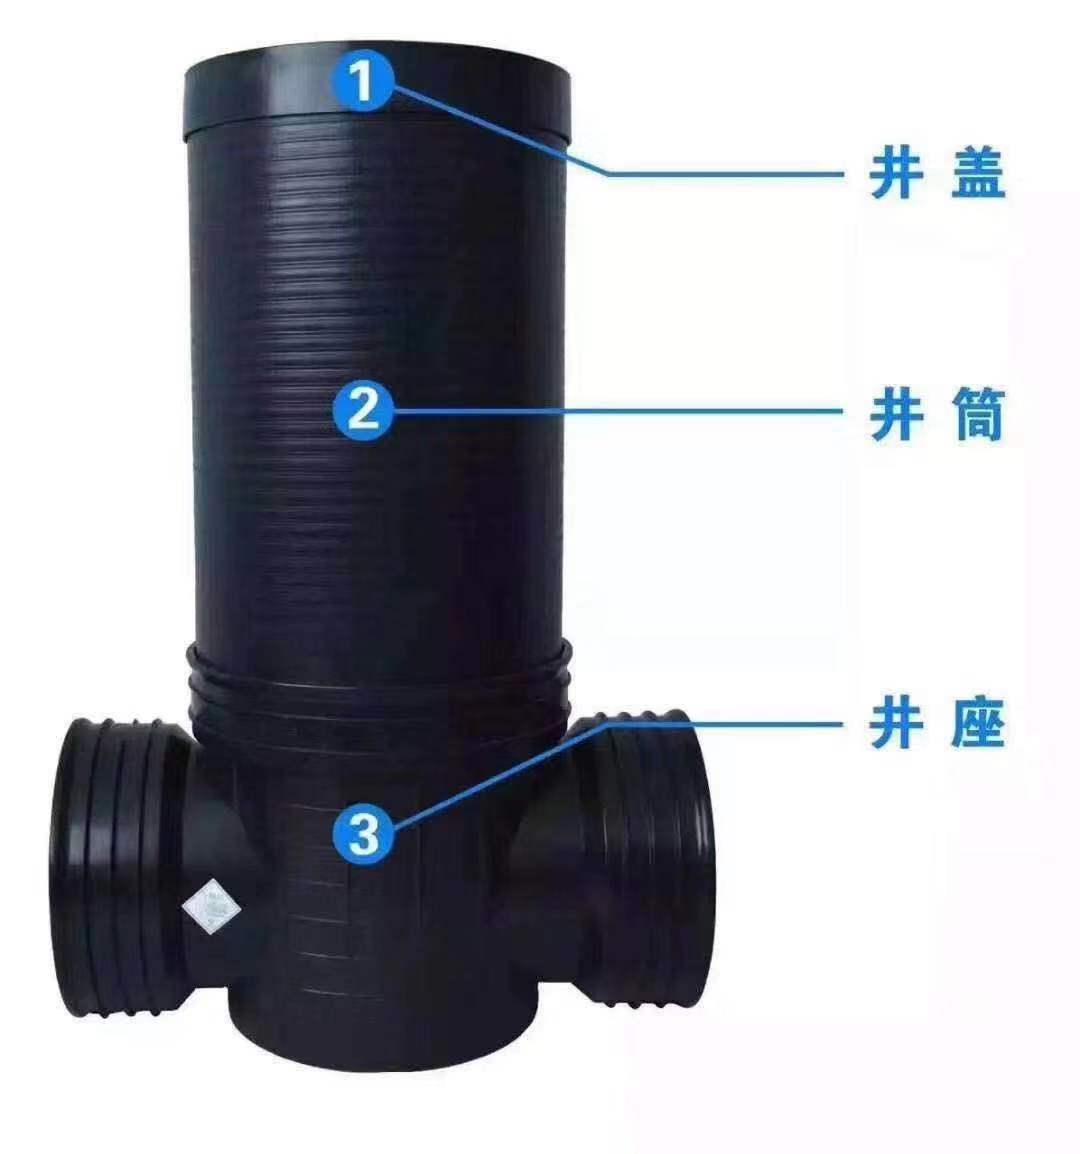 厂家直销塑料检查井 雨水污水排水井 成品直通井座 规格齐全示例图3